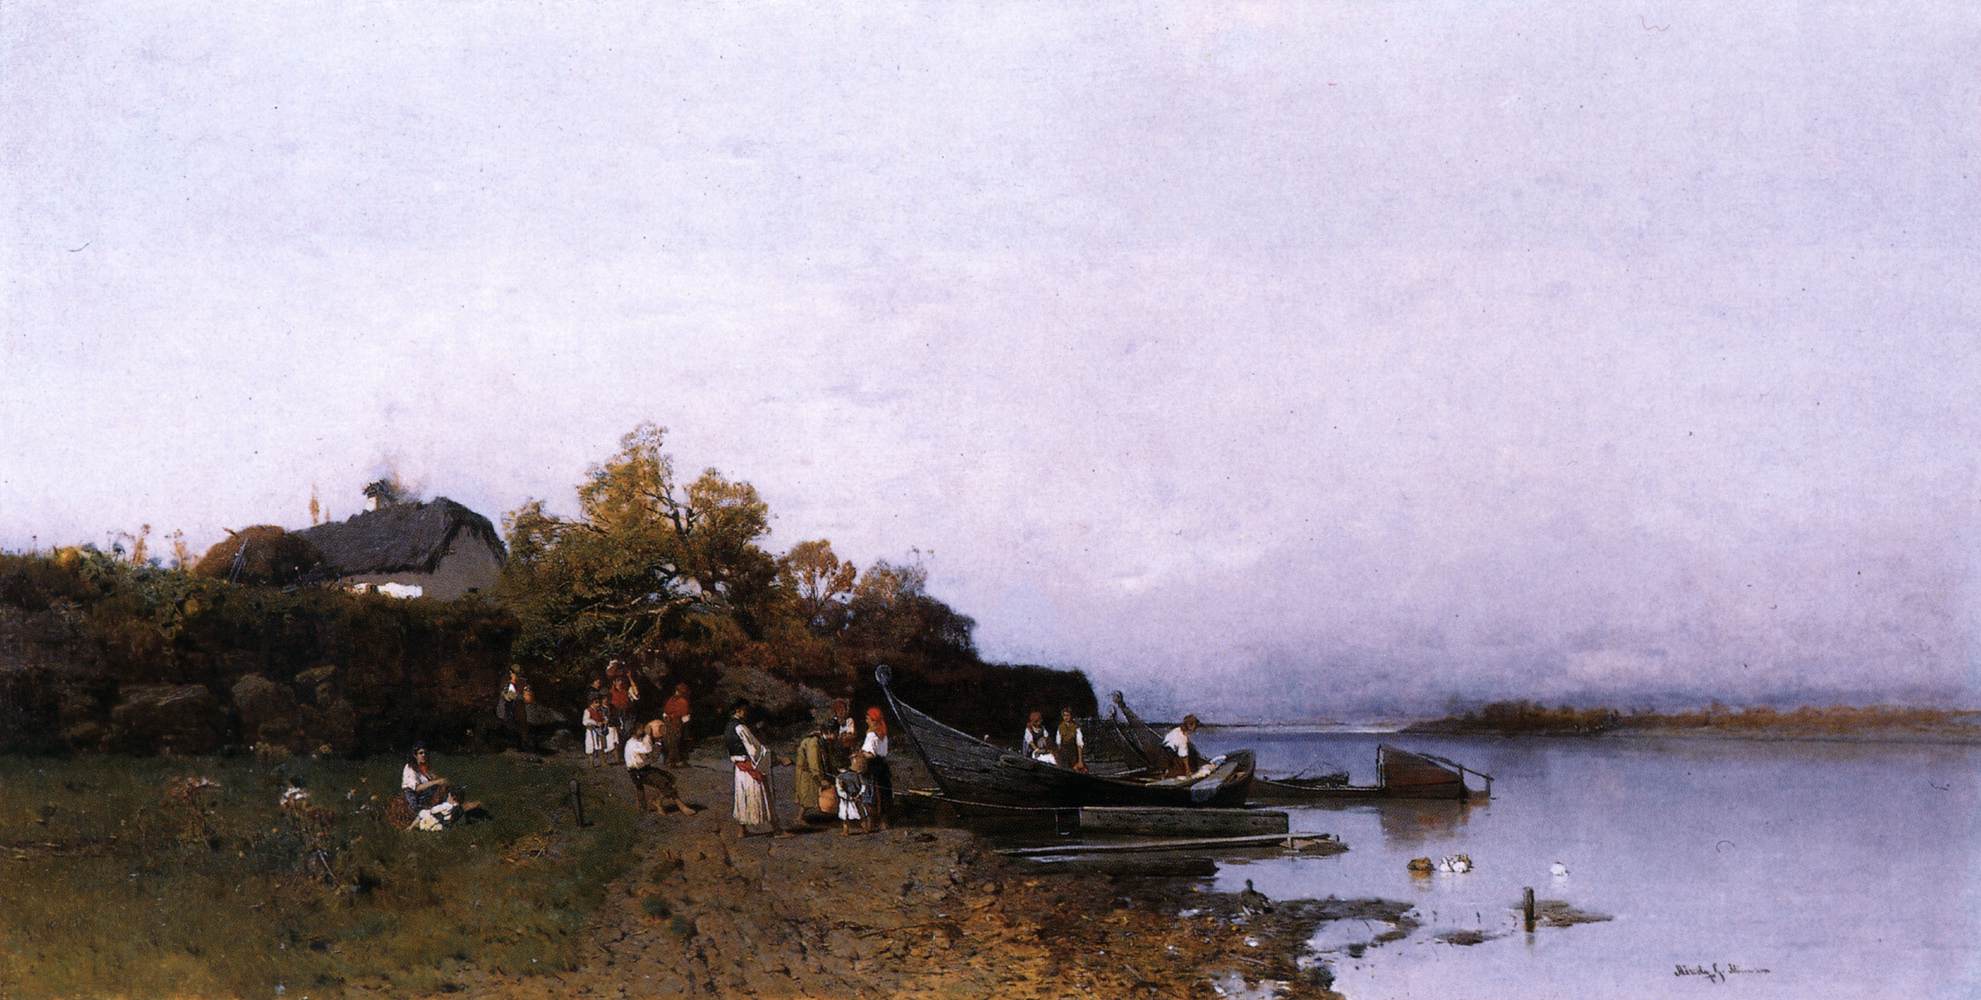 Tisza Nehri'nde balıkçılar feribotu